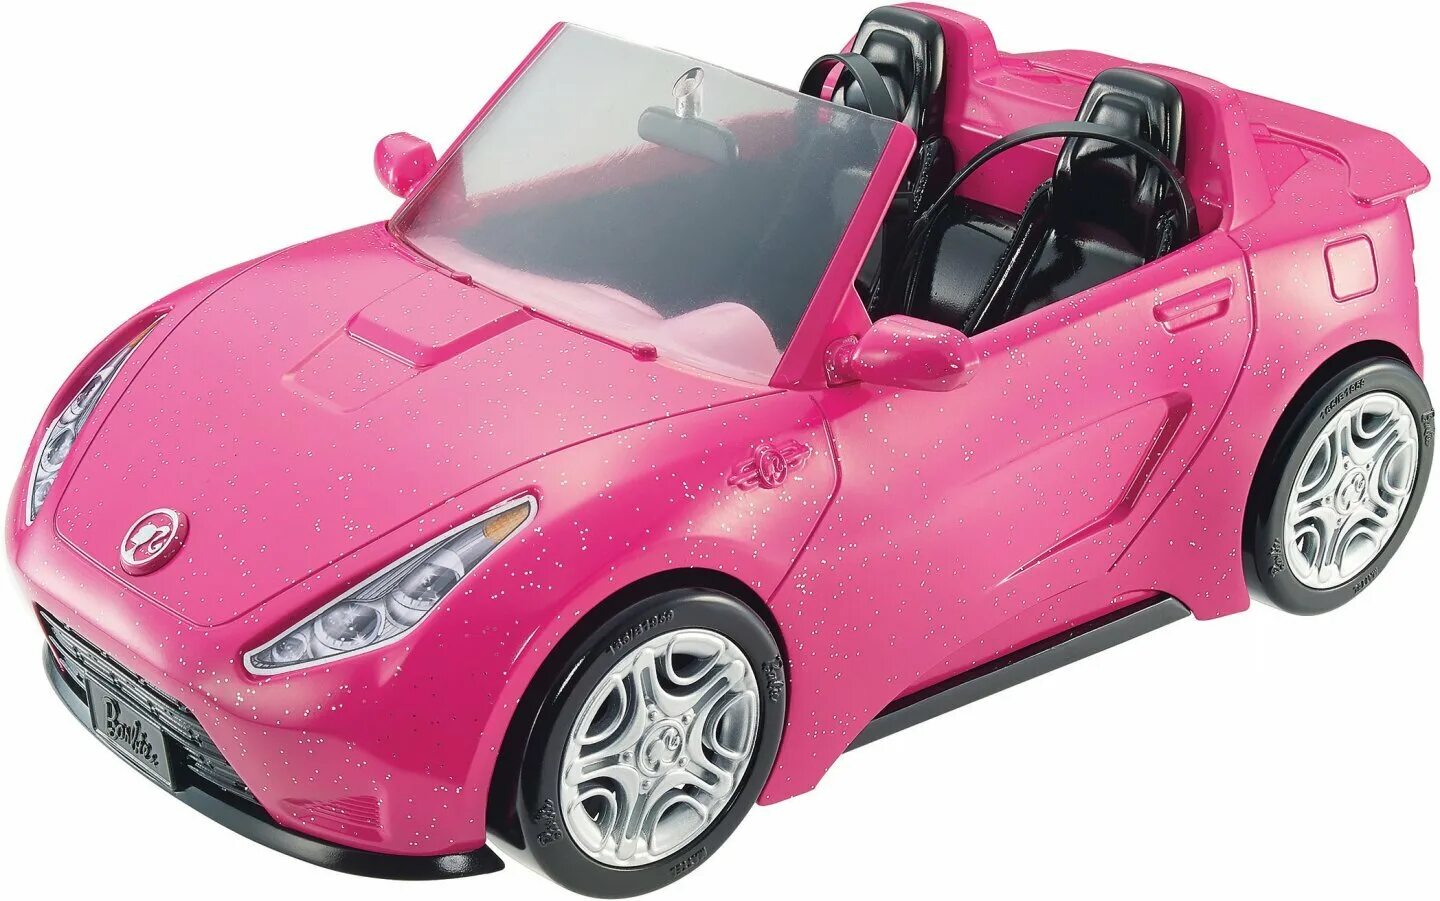 Кабриолет Barbie dvx59. Набор Barbie гламурный кабриолет, djr55. Машина кабриолет Barbie на радиоуправлении 63619. Машинка радиоуправляемая Nikko для Барби Corvette. Купить машинку в барнауле